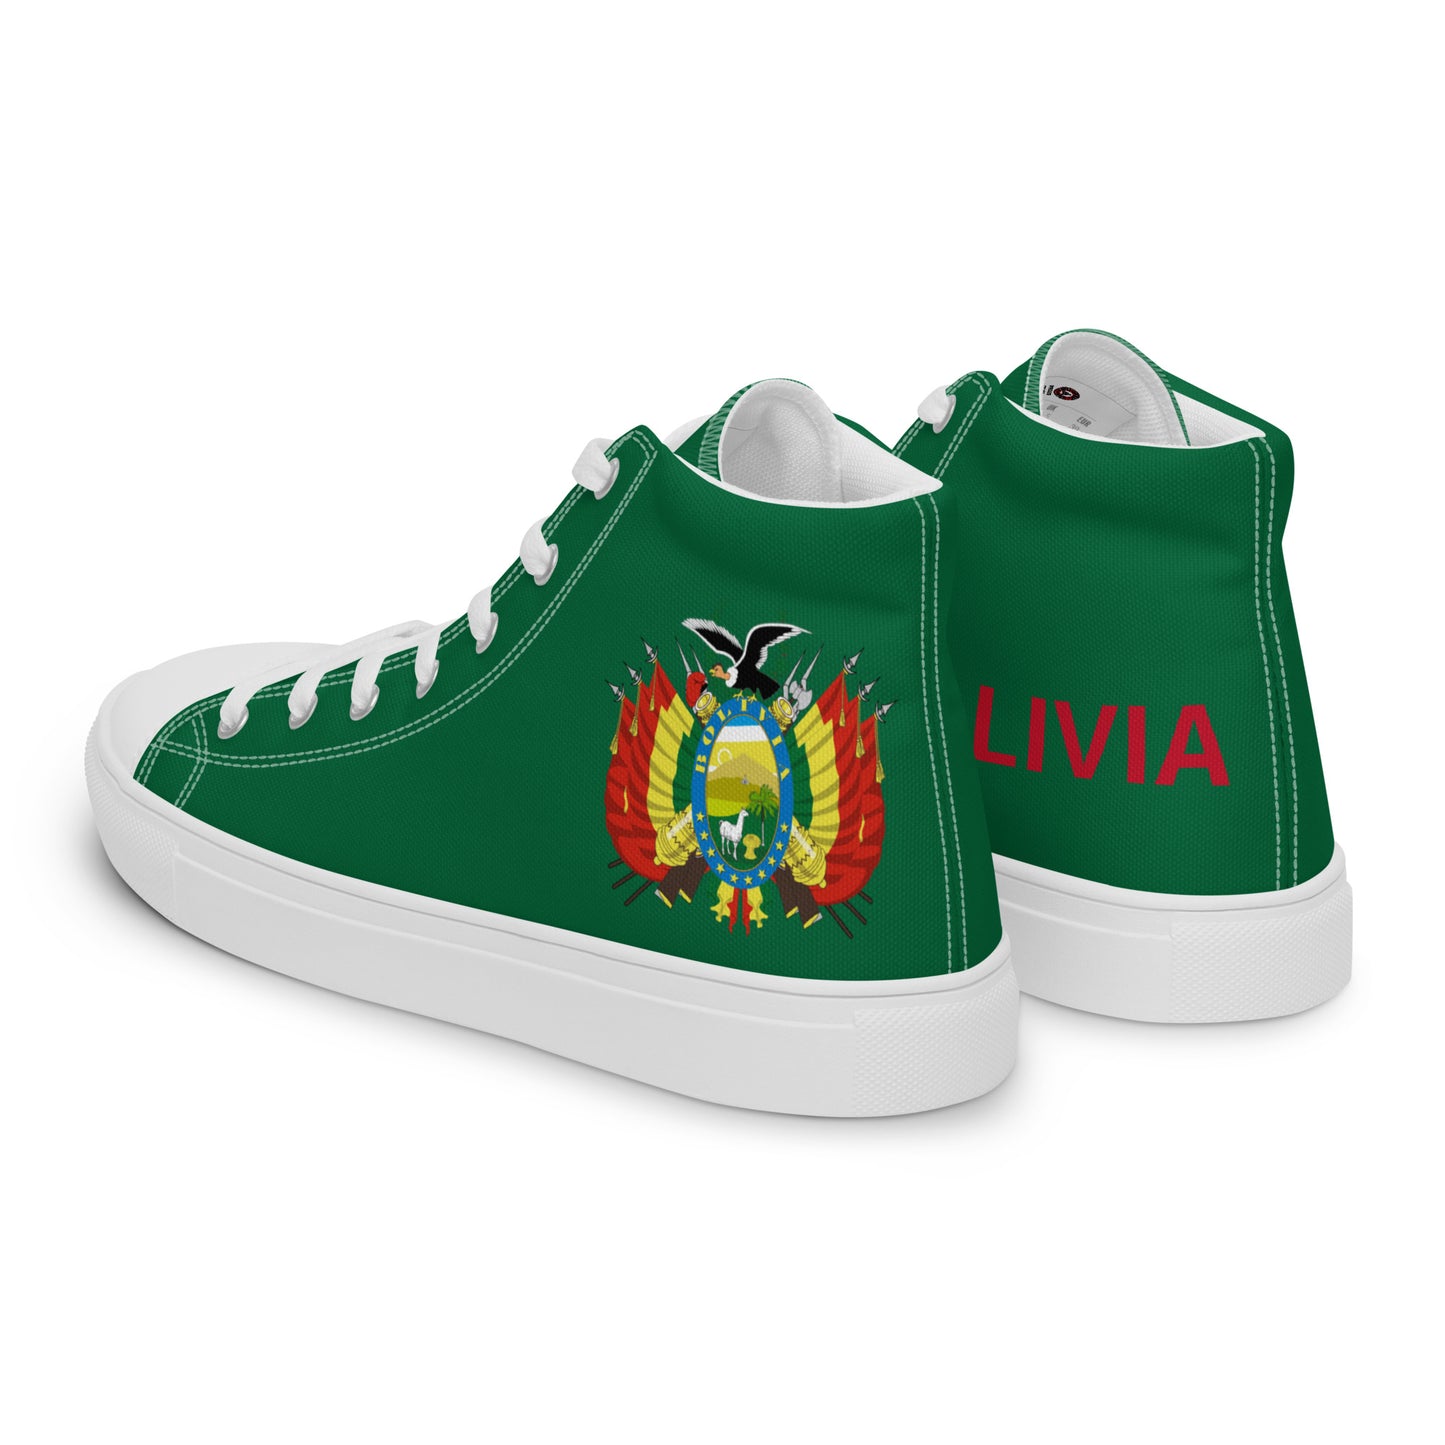 Bolivia - Men - Green - High top shoes